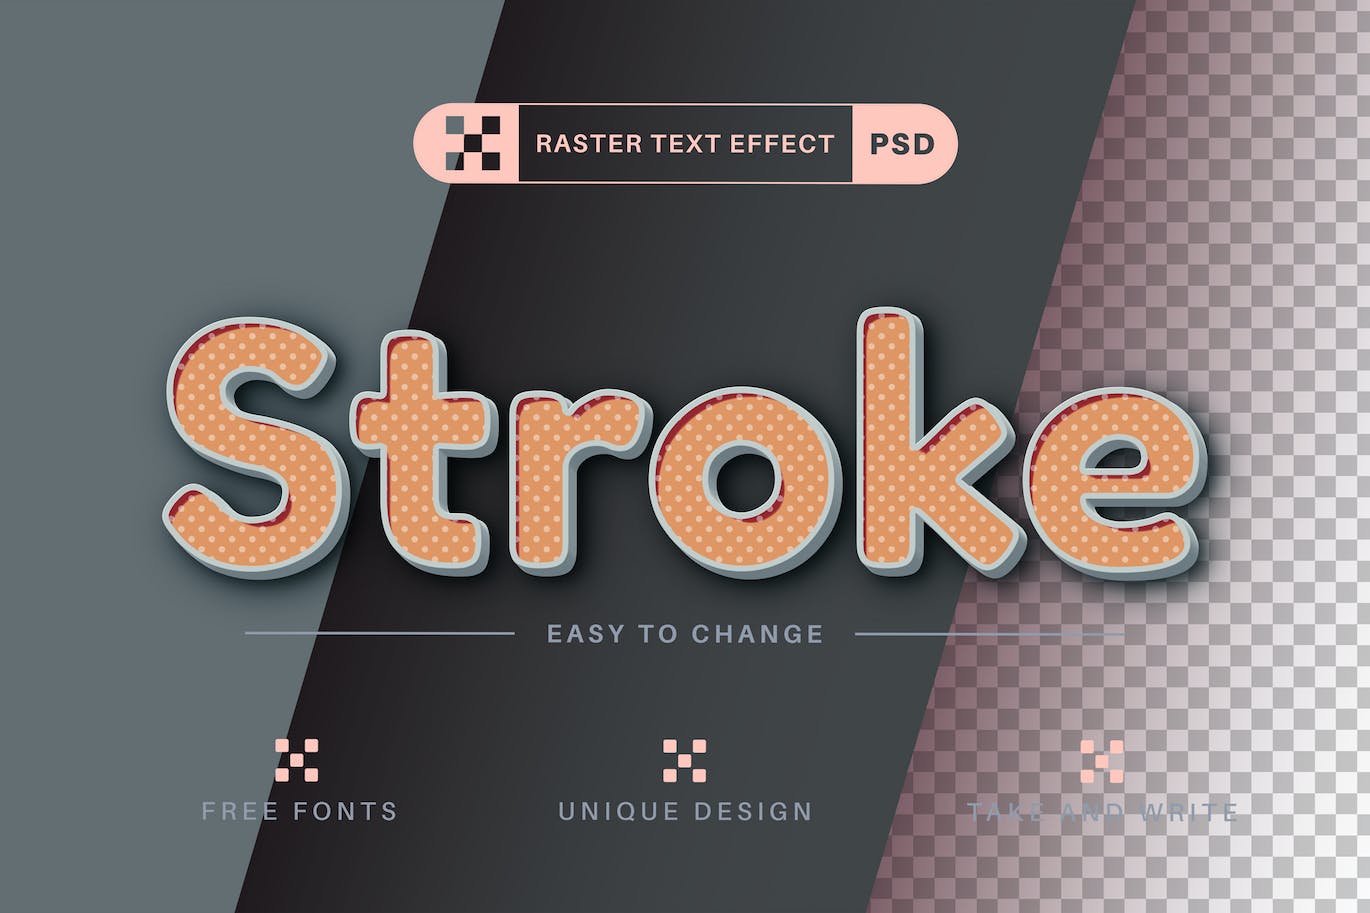 波尔卡圆点文字效果字体样式 Stroke Polka Dot Editable Text Effect, Font Style 插件预设 第1张